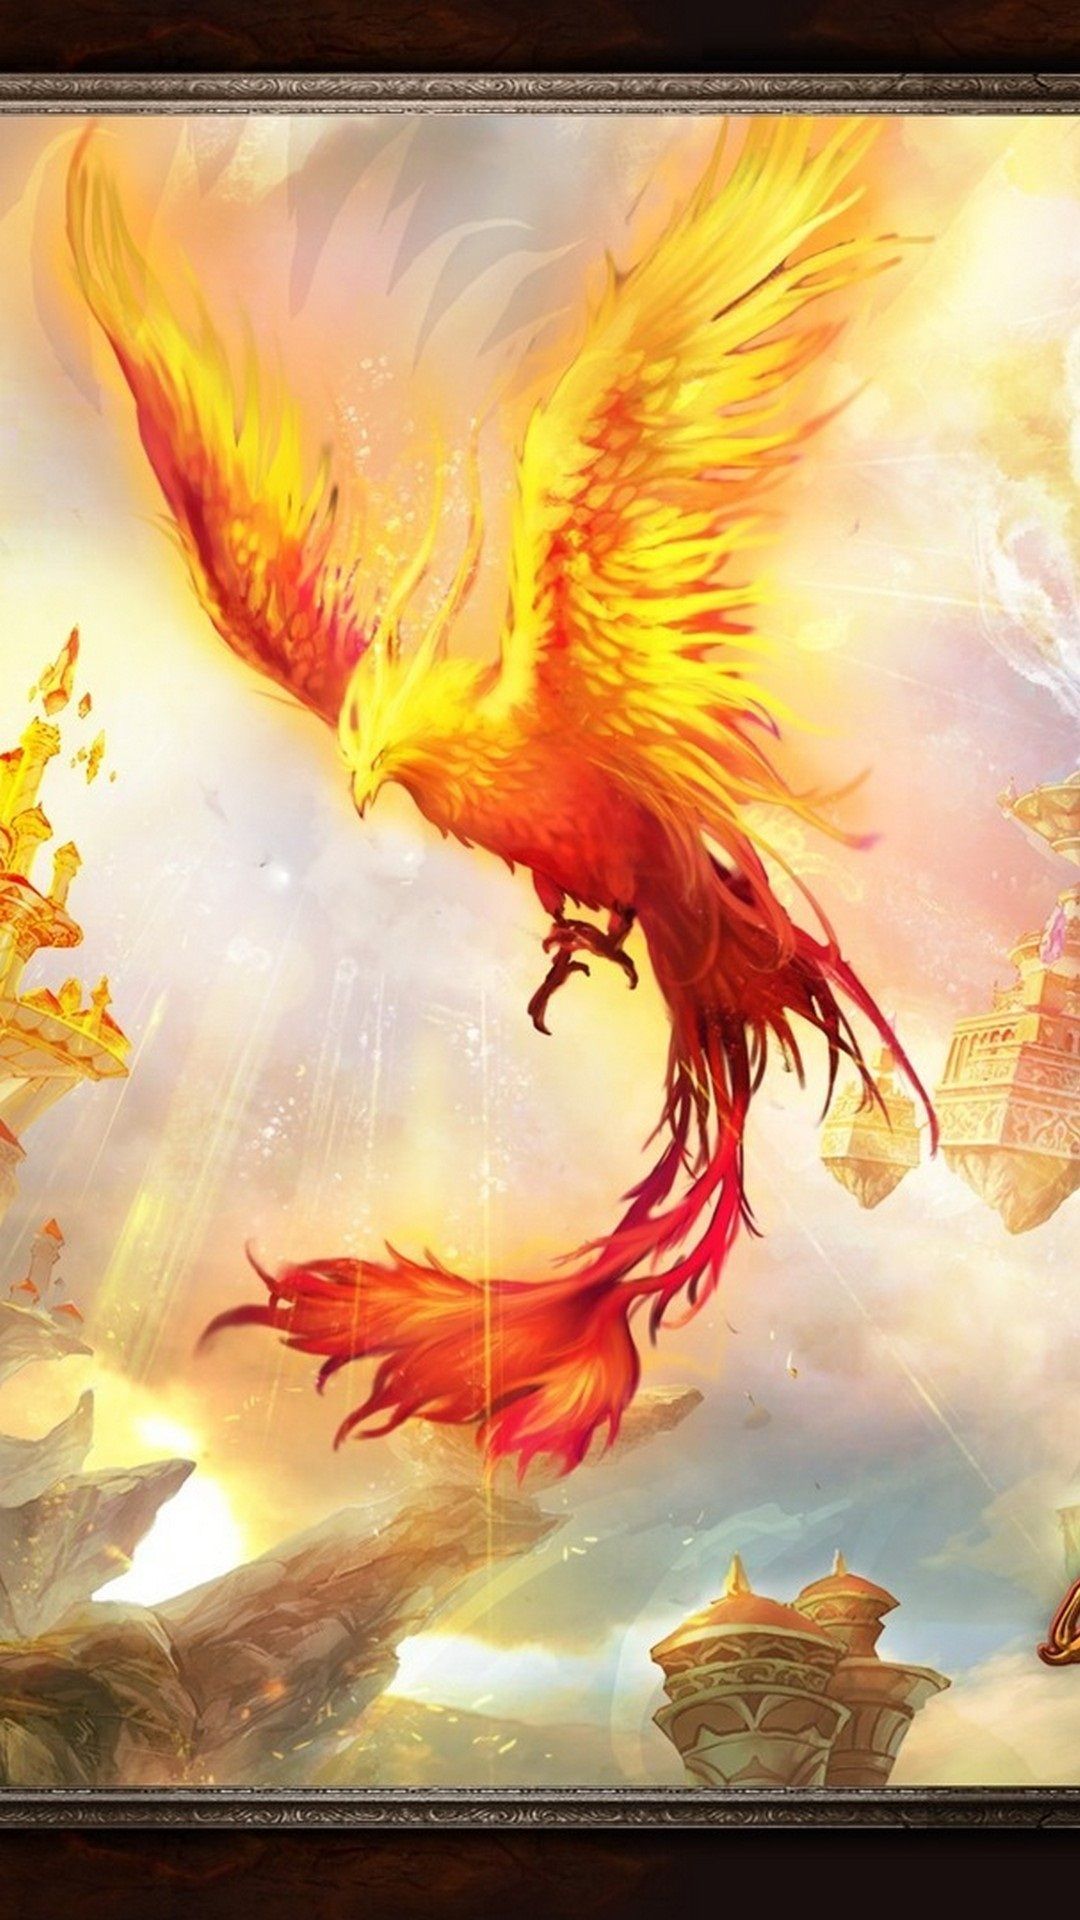 Phoenix Bird Image Wallpaper For iPhone iPhone Wallpaper